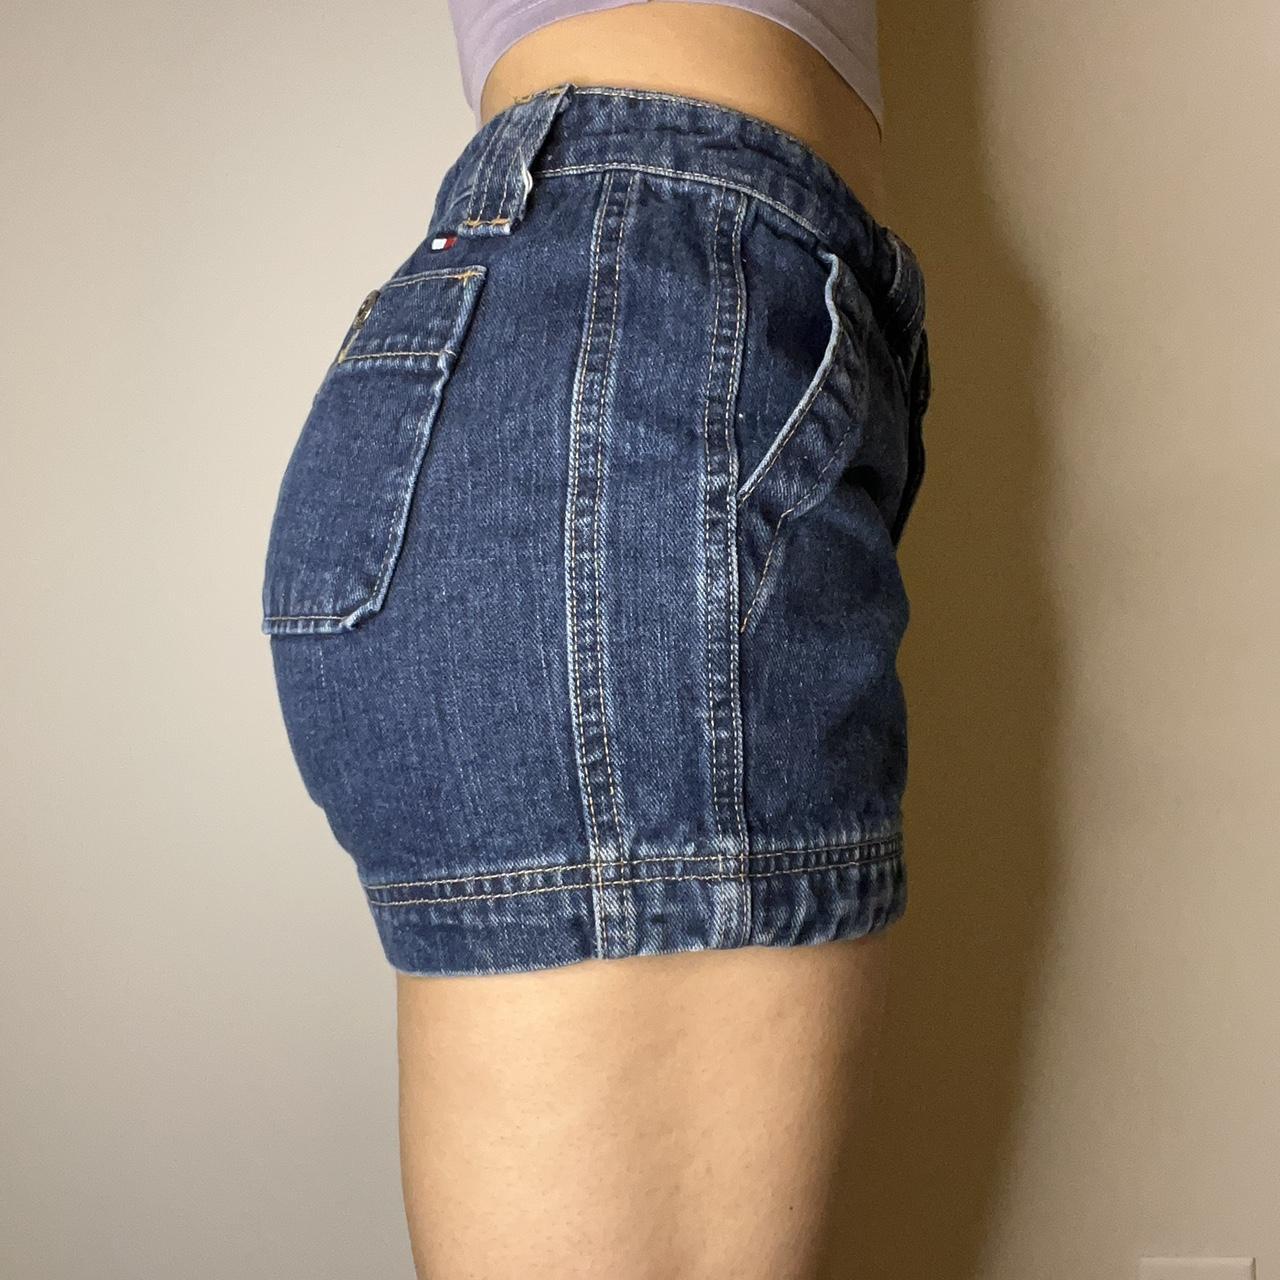 Hilfiger Denim Women's Shorts (2)